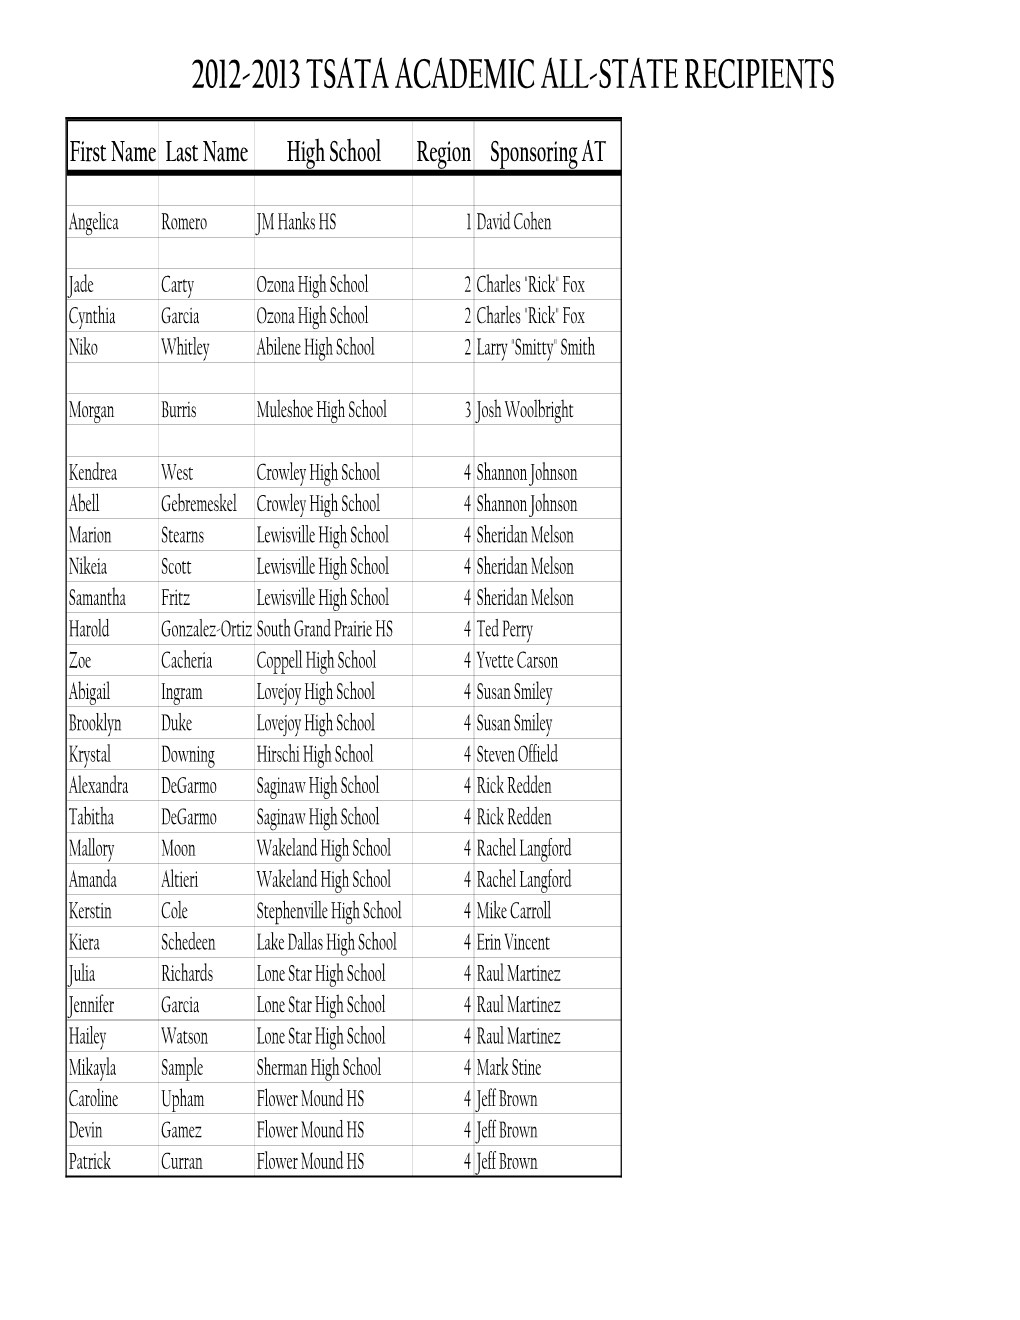 TSATA All-State Recipients-2012-2013